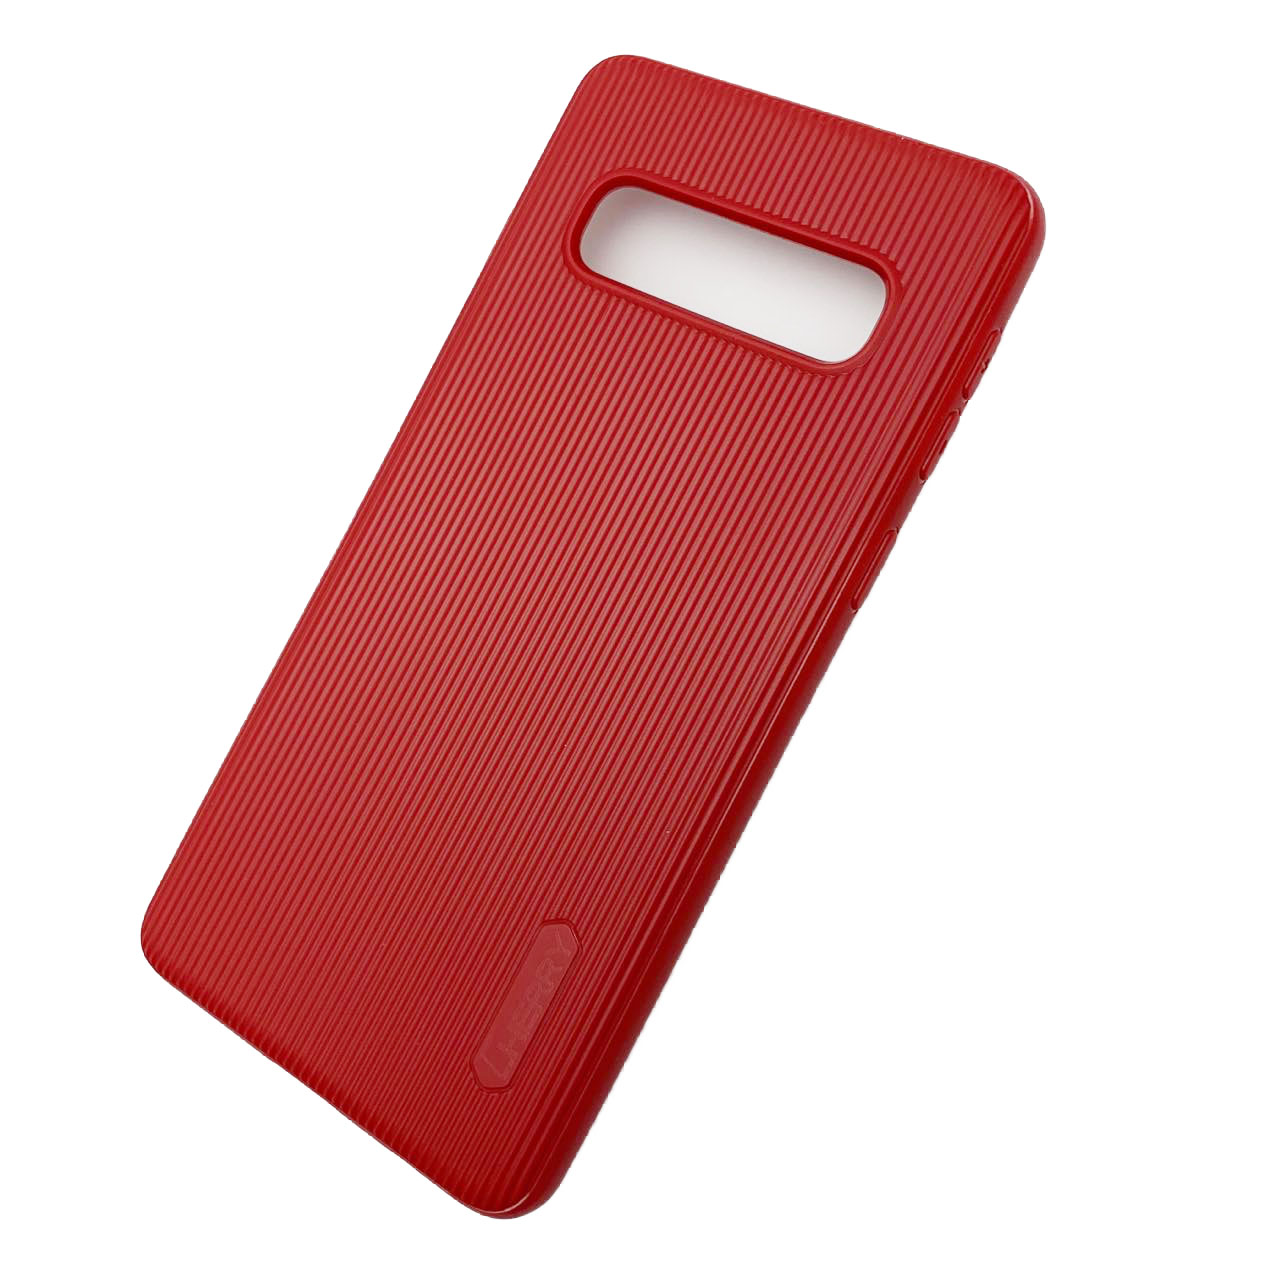 Чехол накладка Cherry для SAMSUNG Galaxy S10 (SM-G973), силикон, полоски, цвет темно красный.